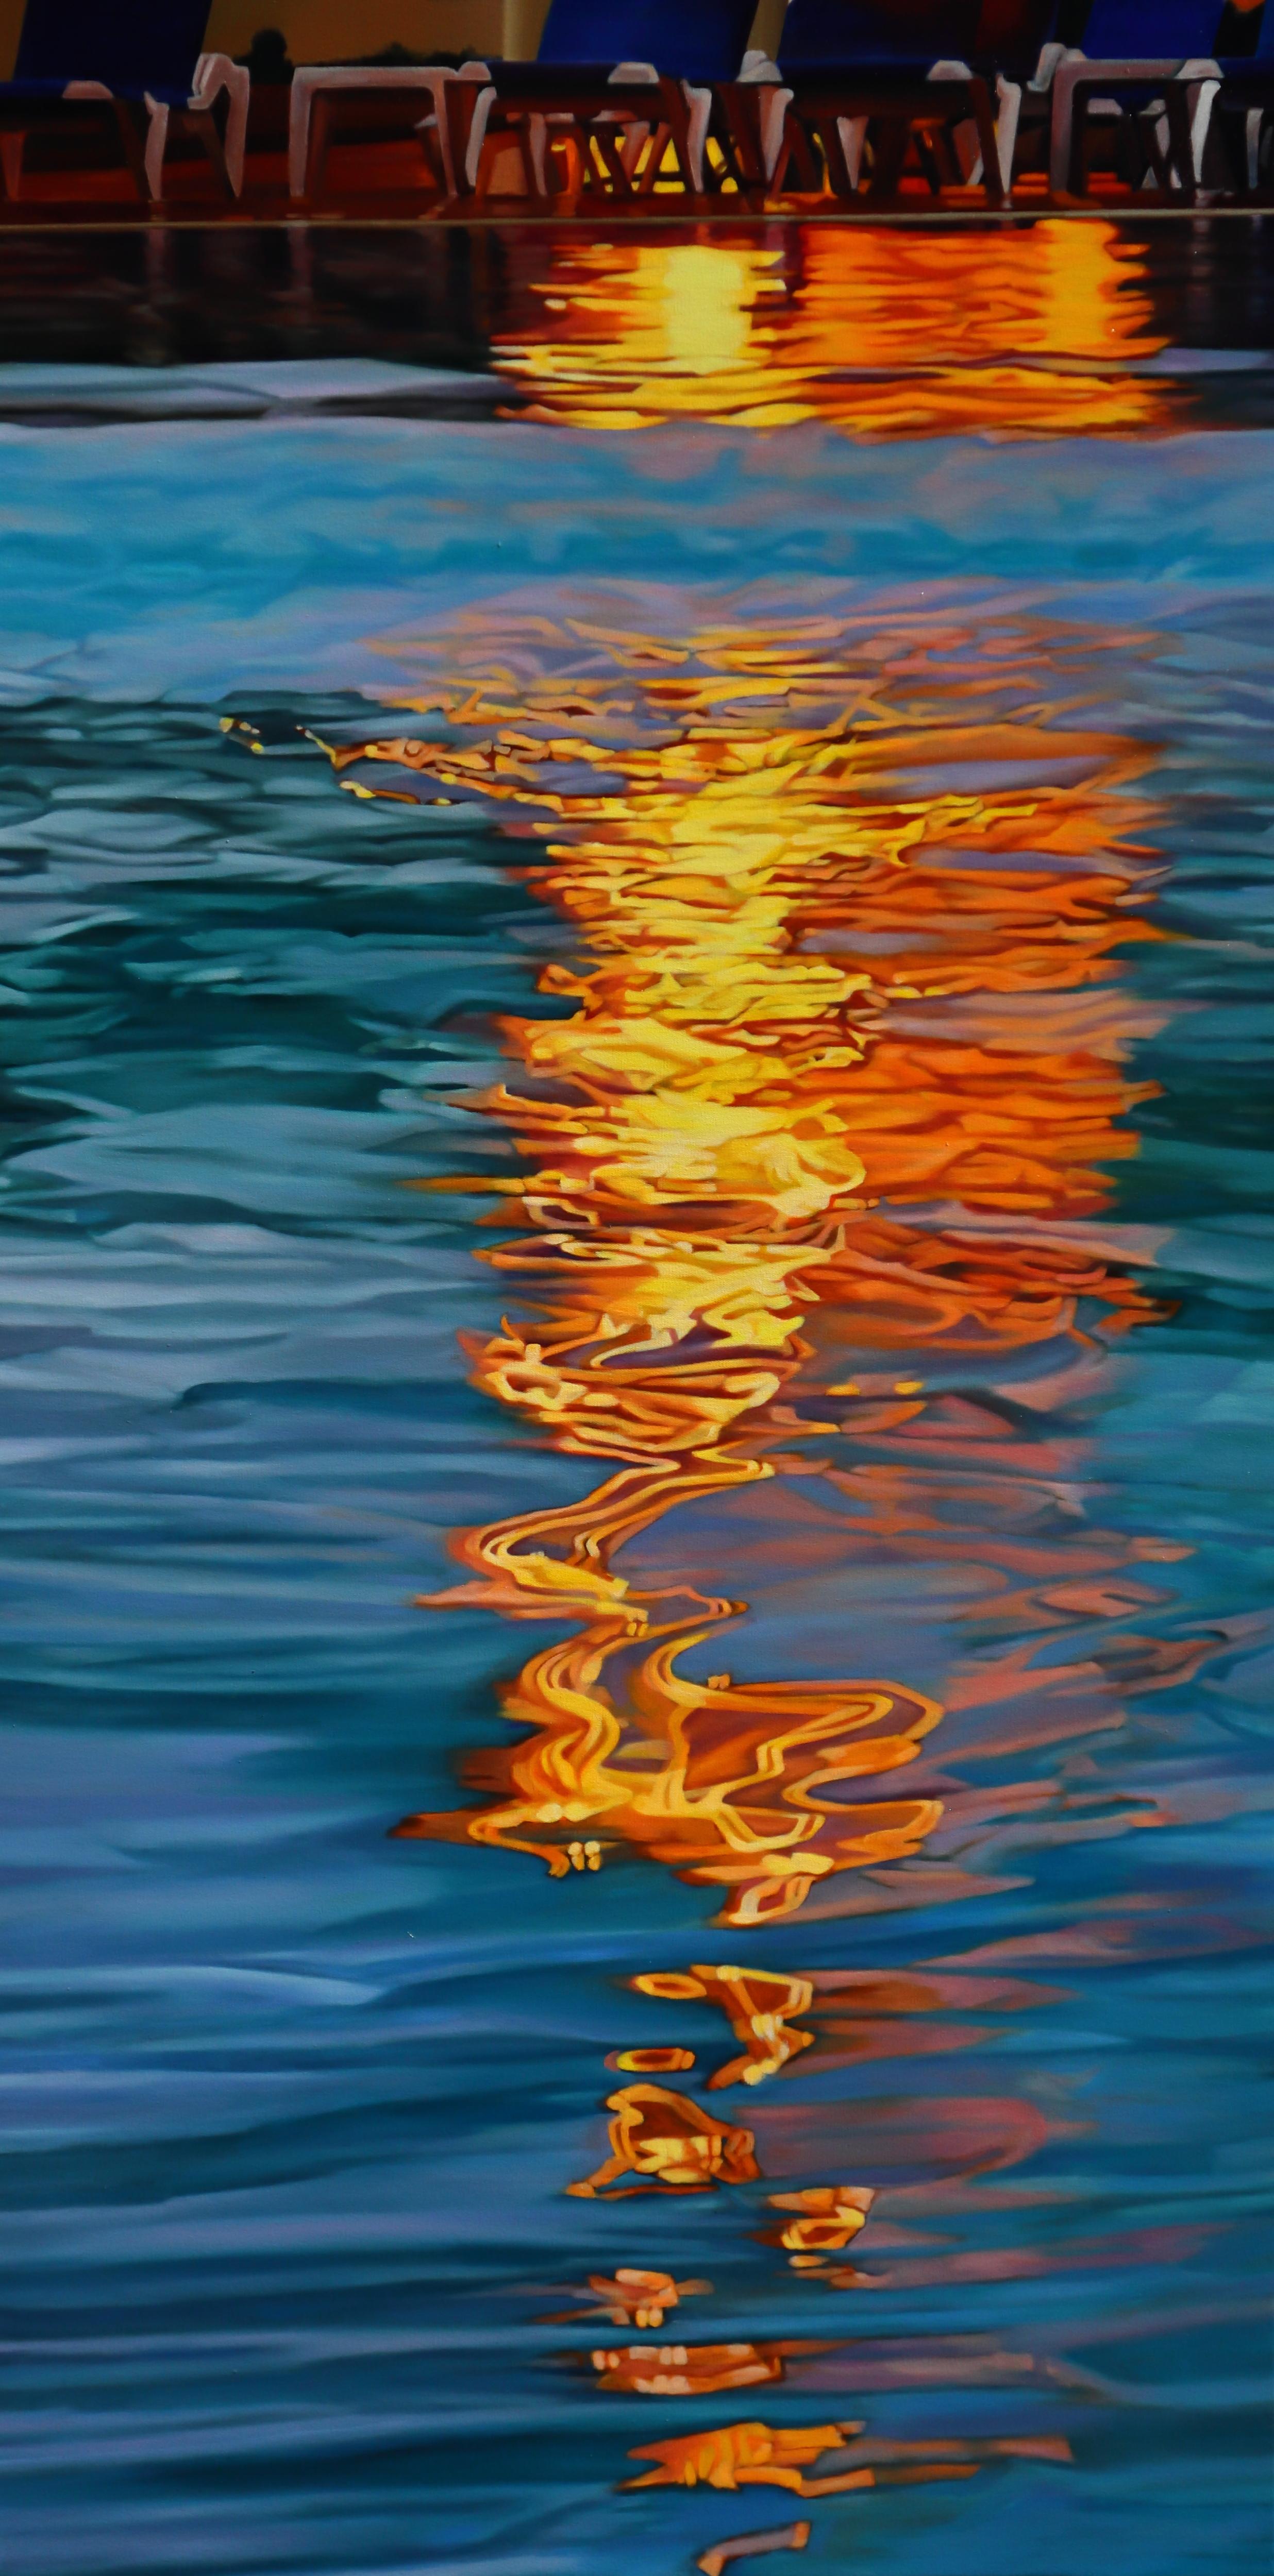 Landscape Painting Sunghee Jang - BEFORE NIGHTFALL - Réalisme / Paysage aquatique / Contemporain / Californie